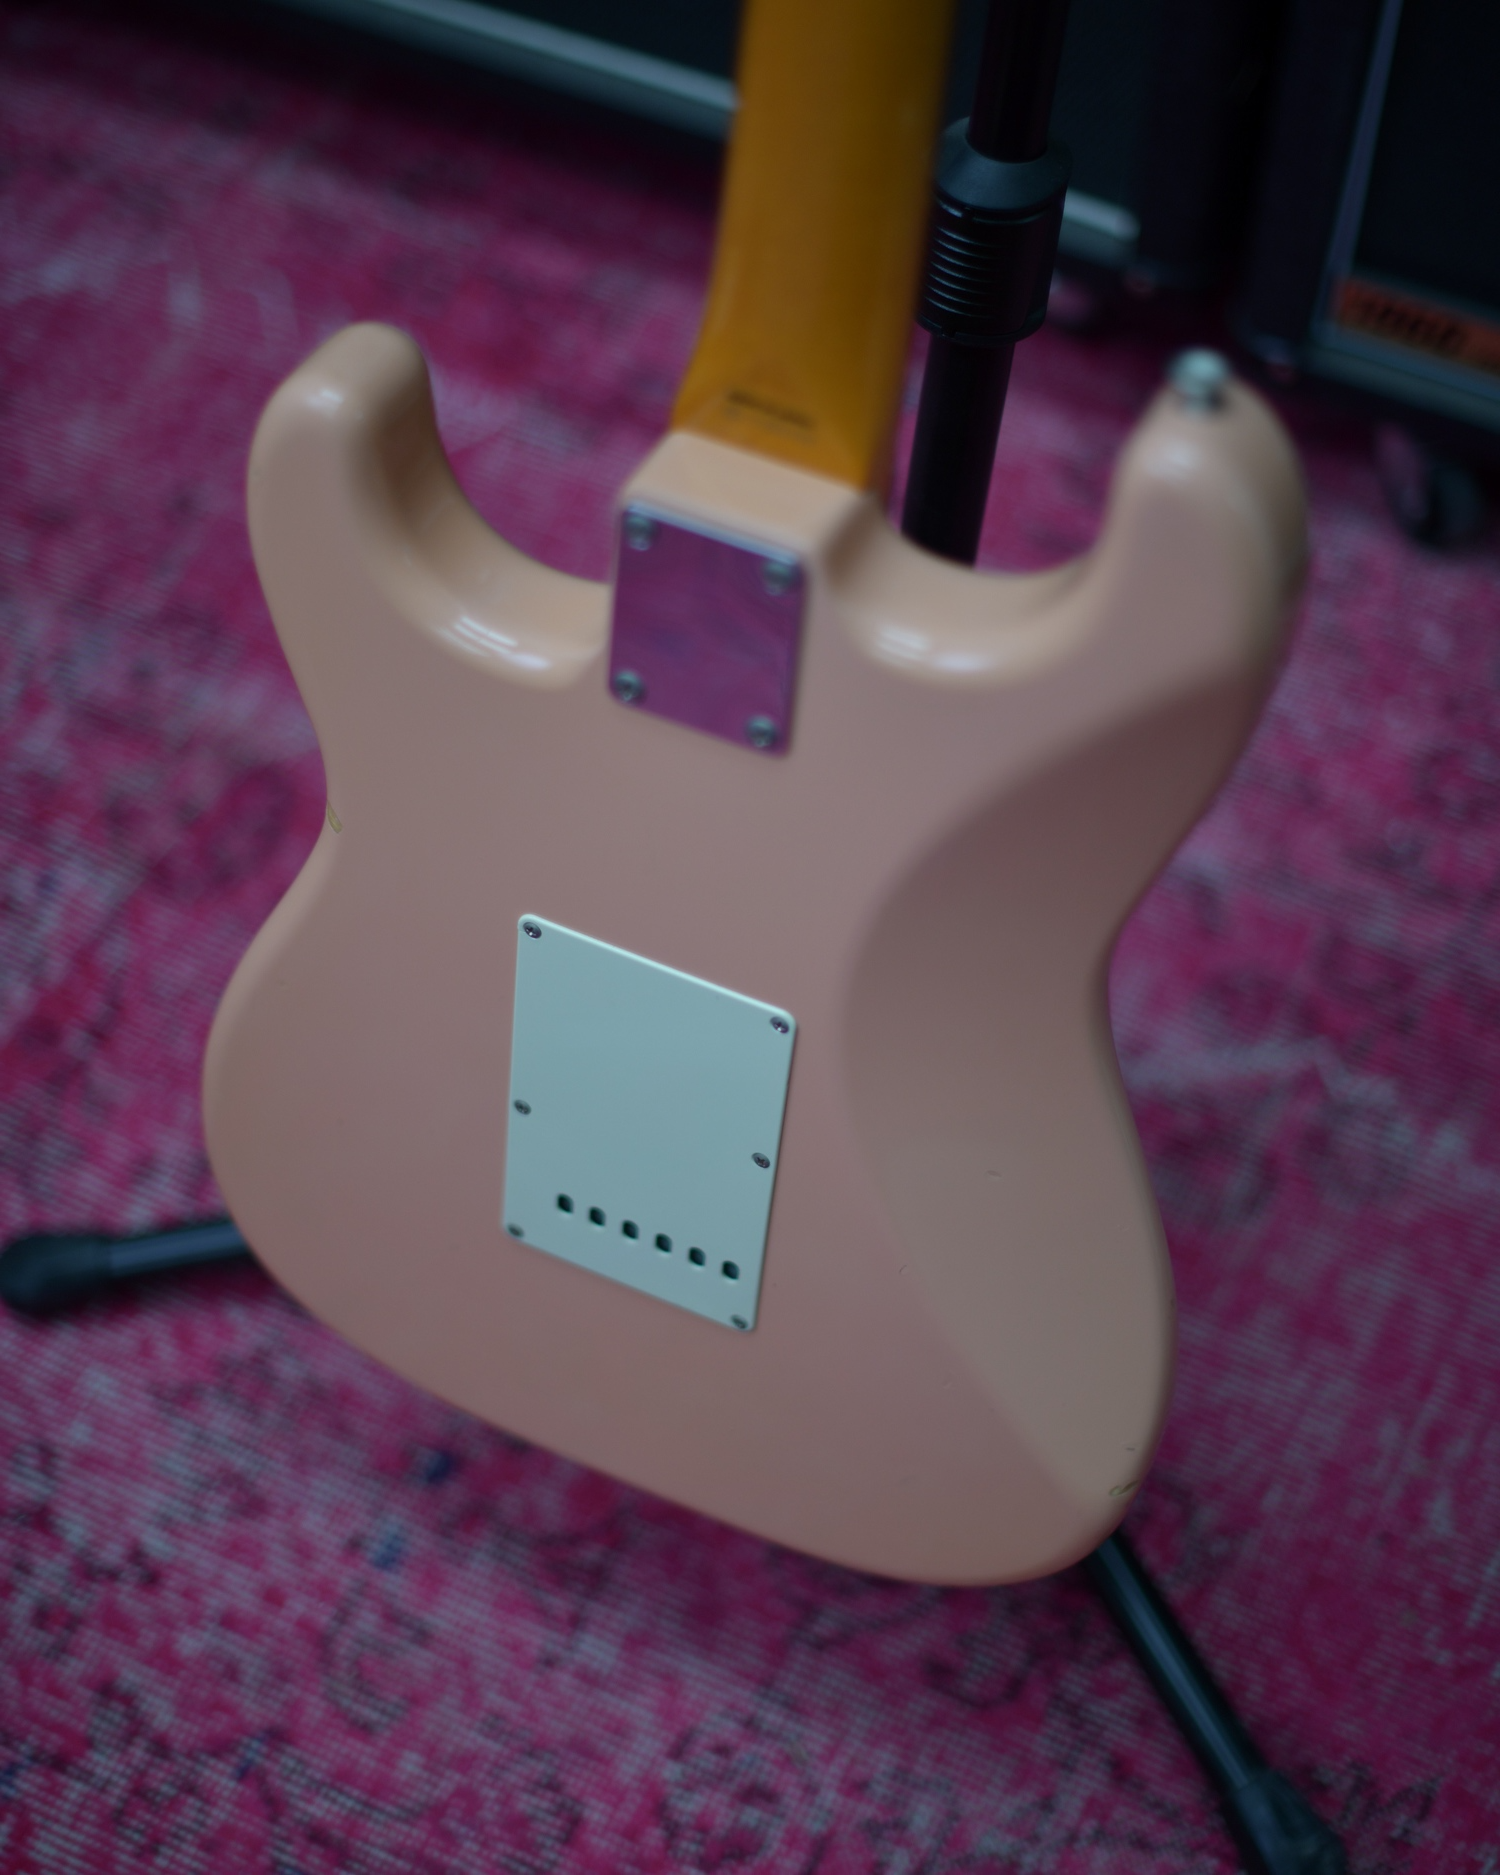 Fender Japan Stratocaster Shell Pink MIJ 2008 Fujigen